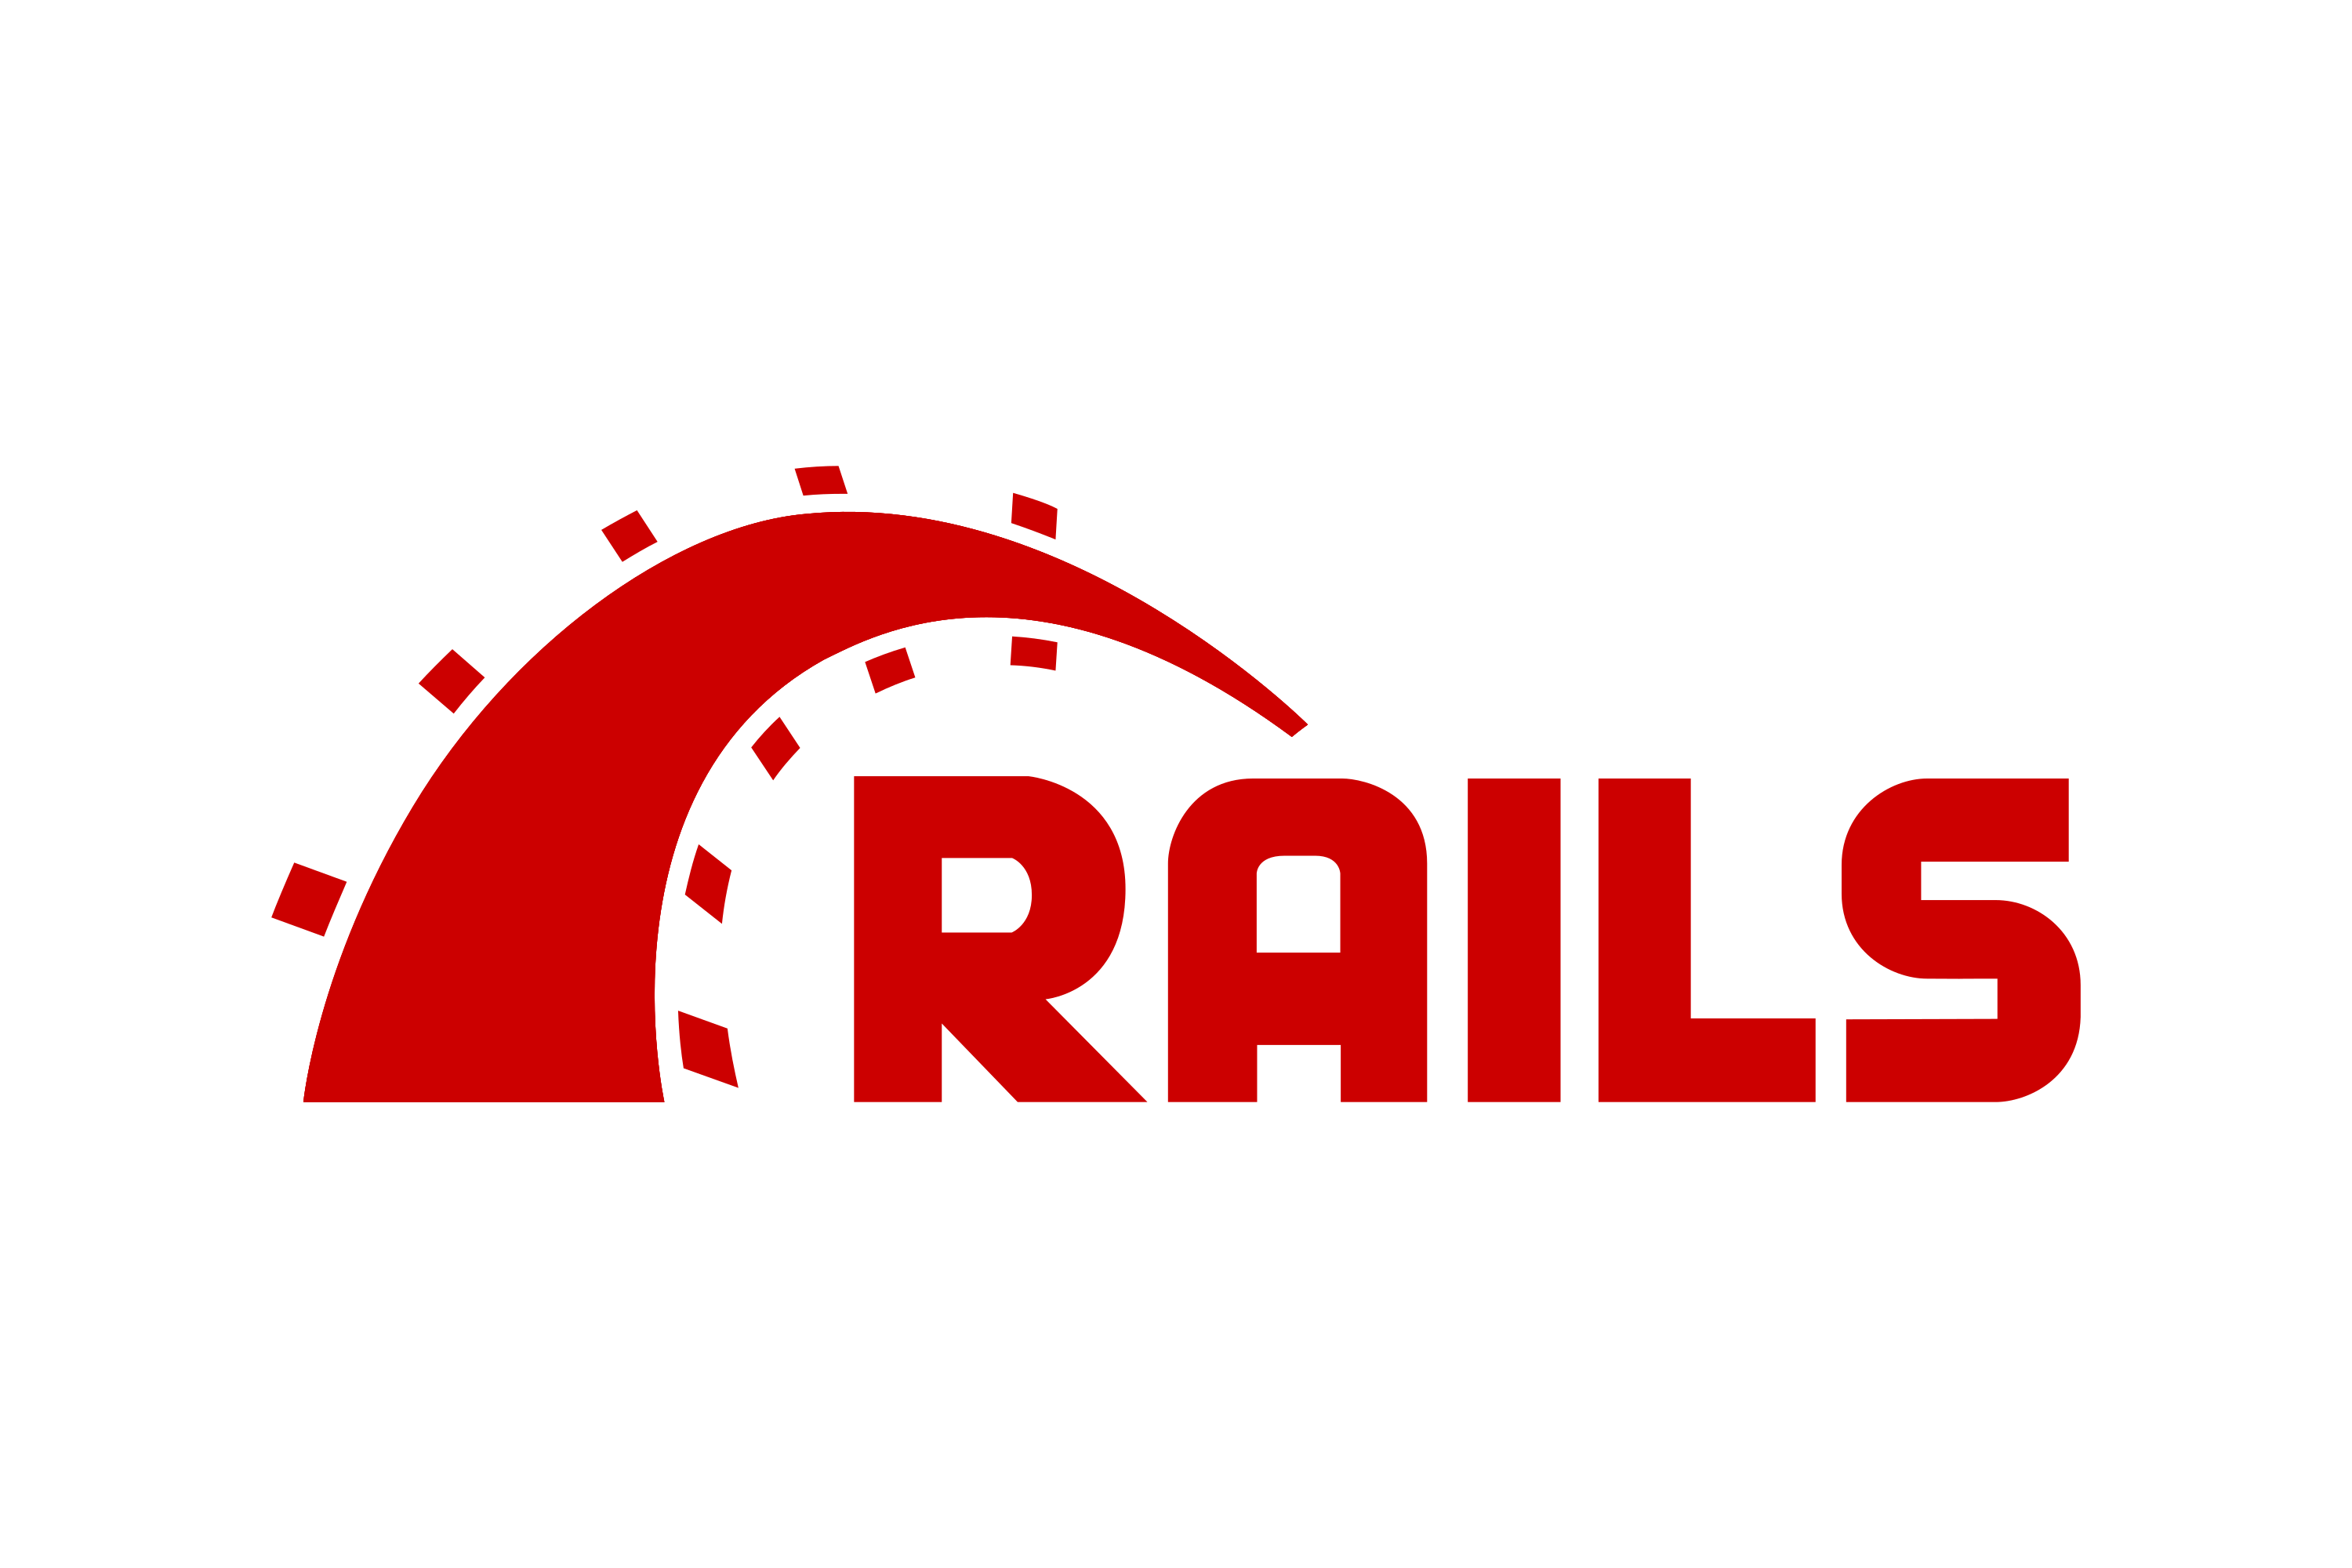 Ruby_on_rails